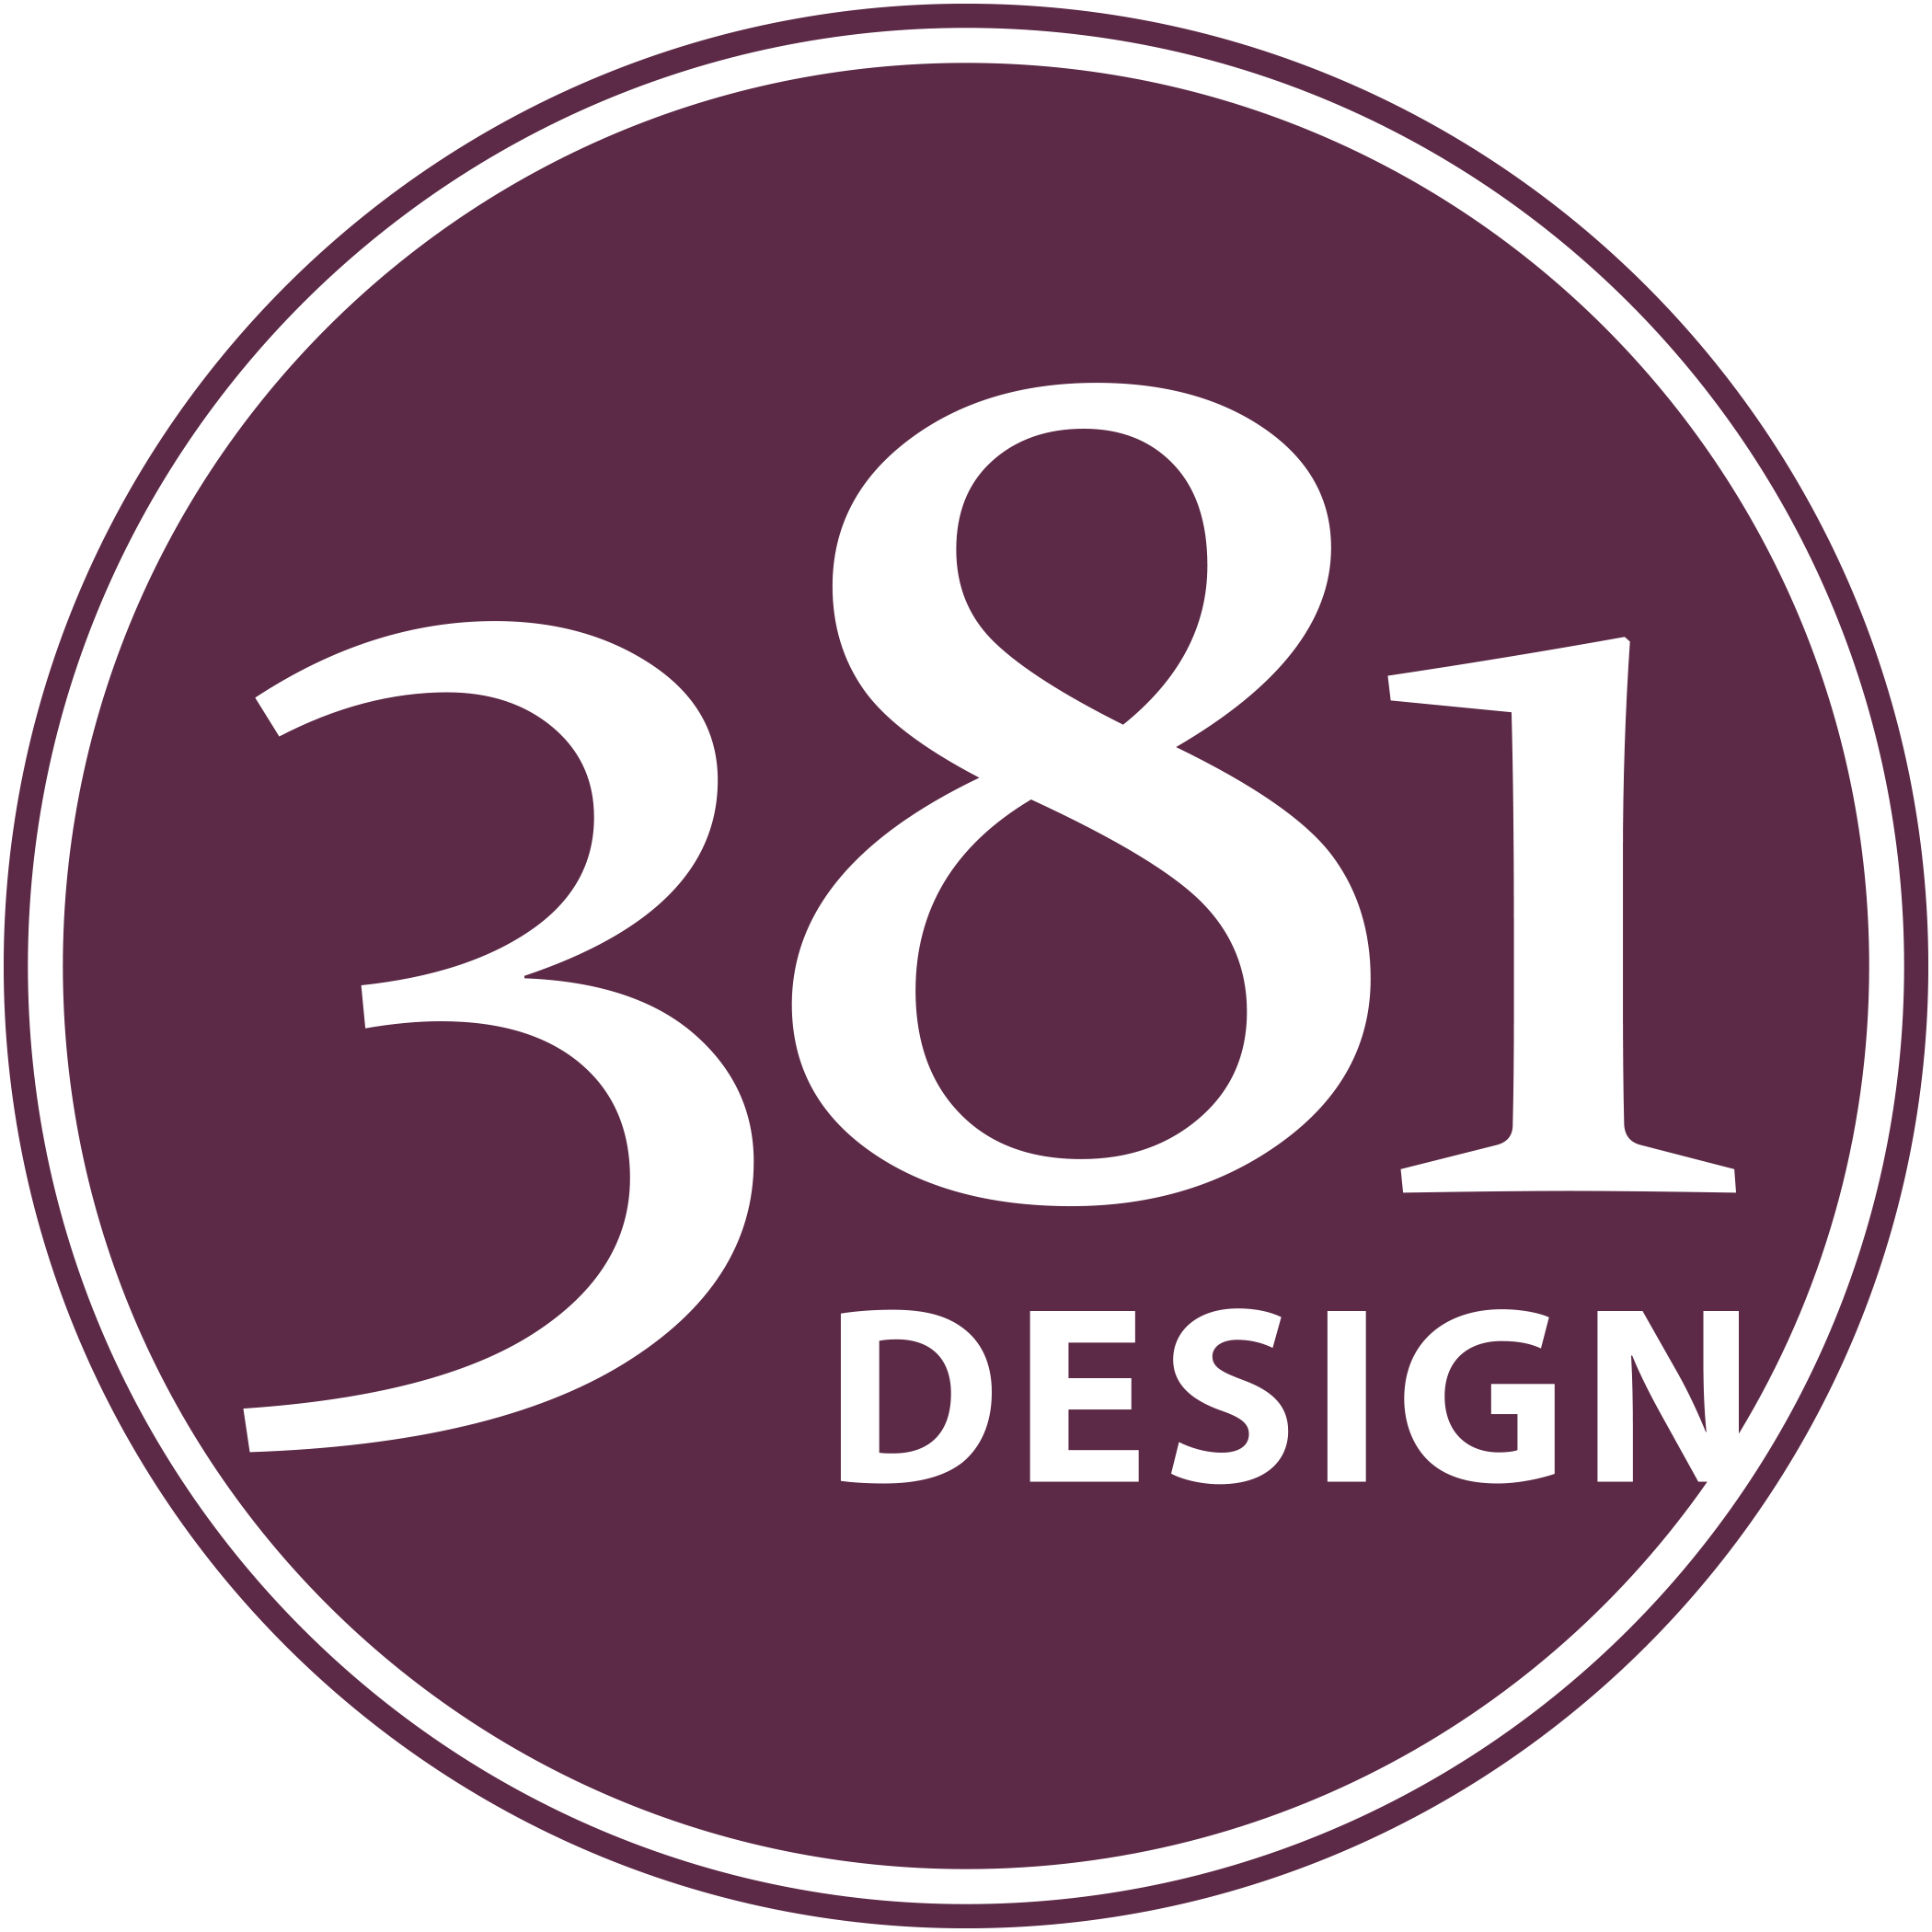 381 Design